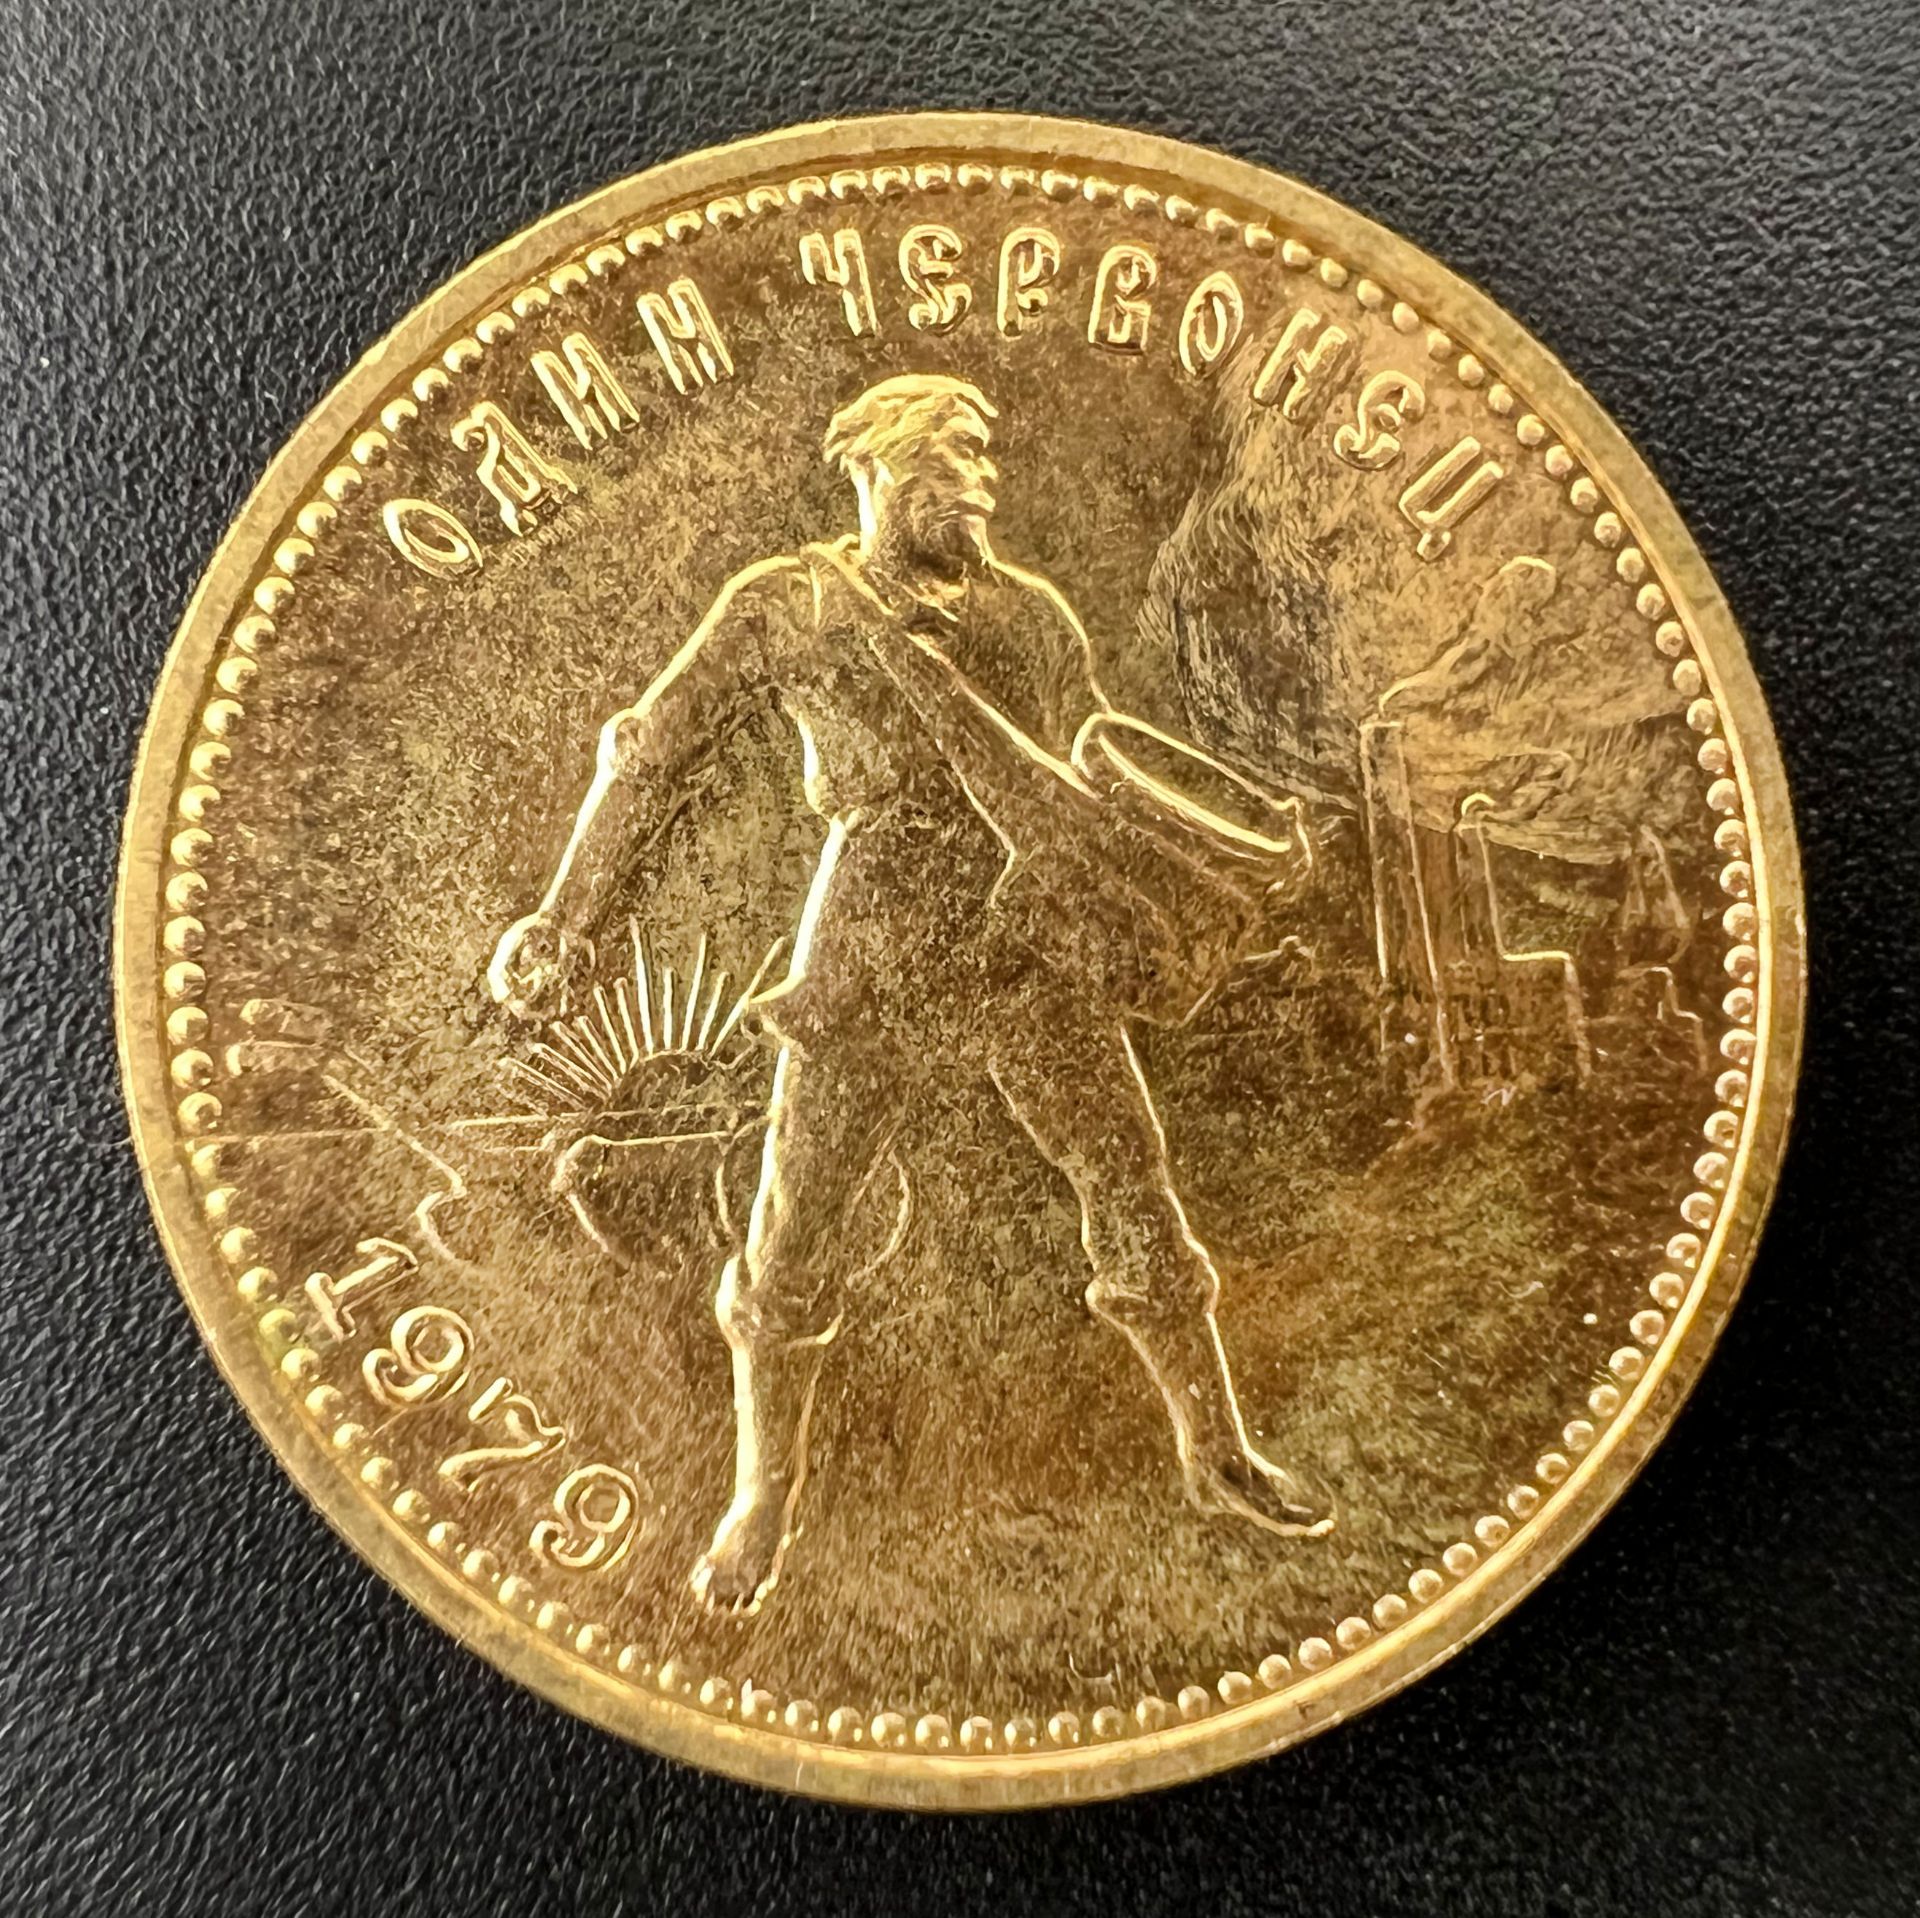 Goldmünze 1 Tscherwonetz. Sowjetunion 1979. 900 Gold.